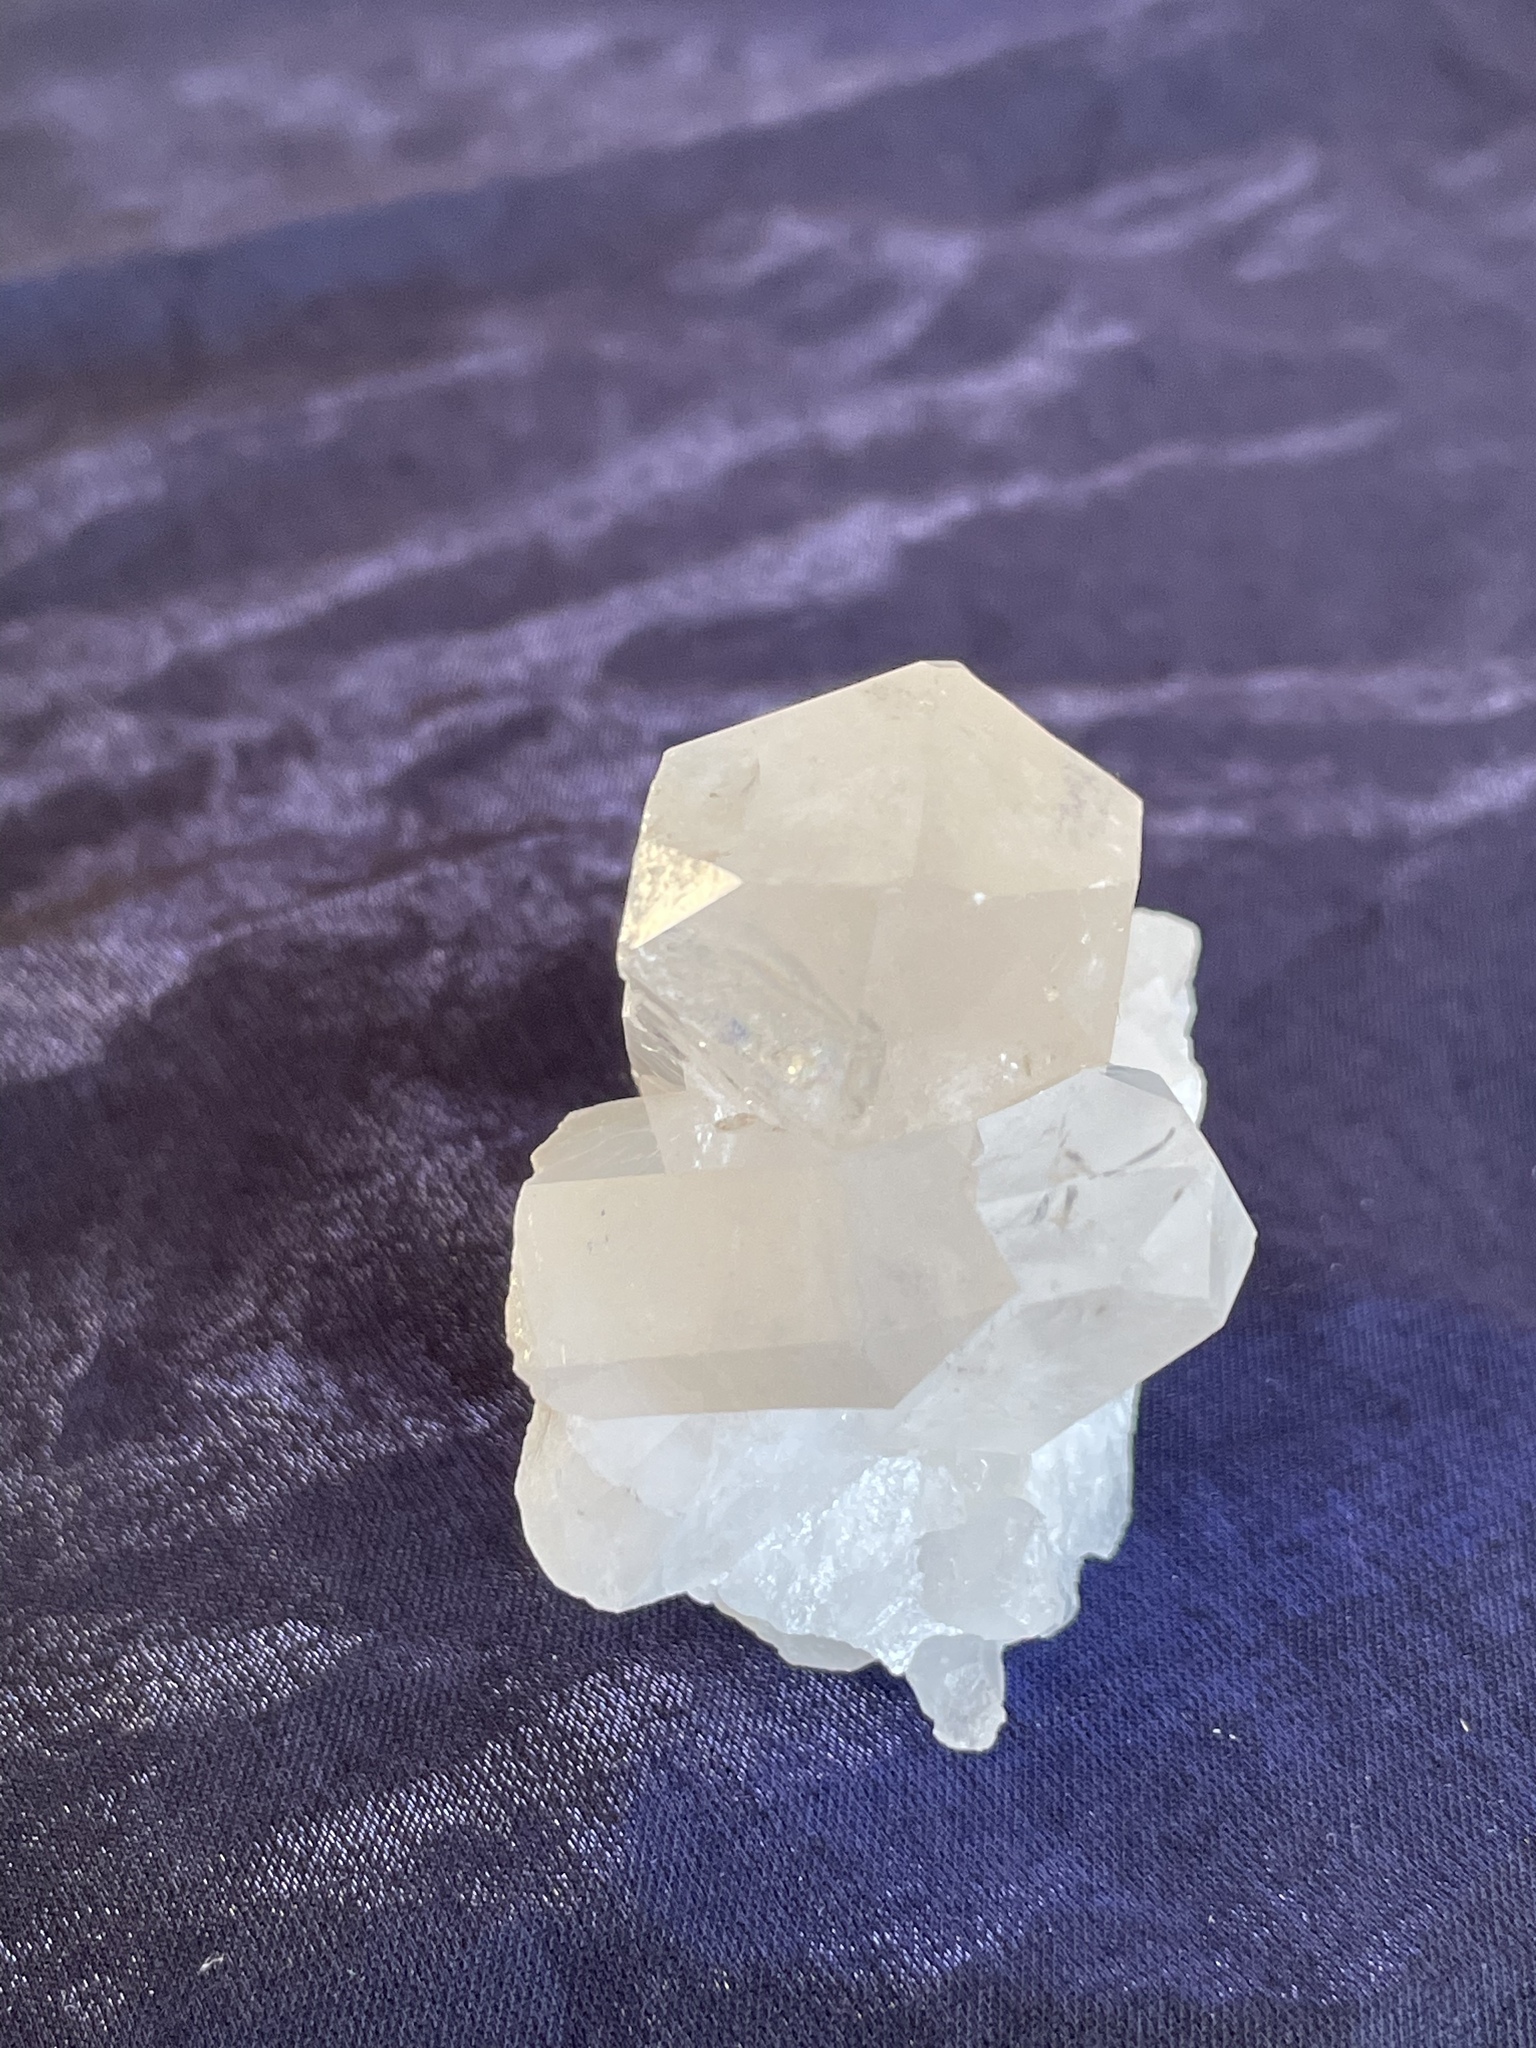 Bergkristall kluster (BK1)